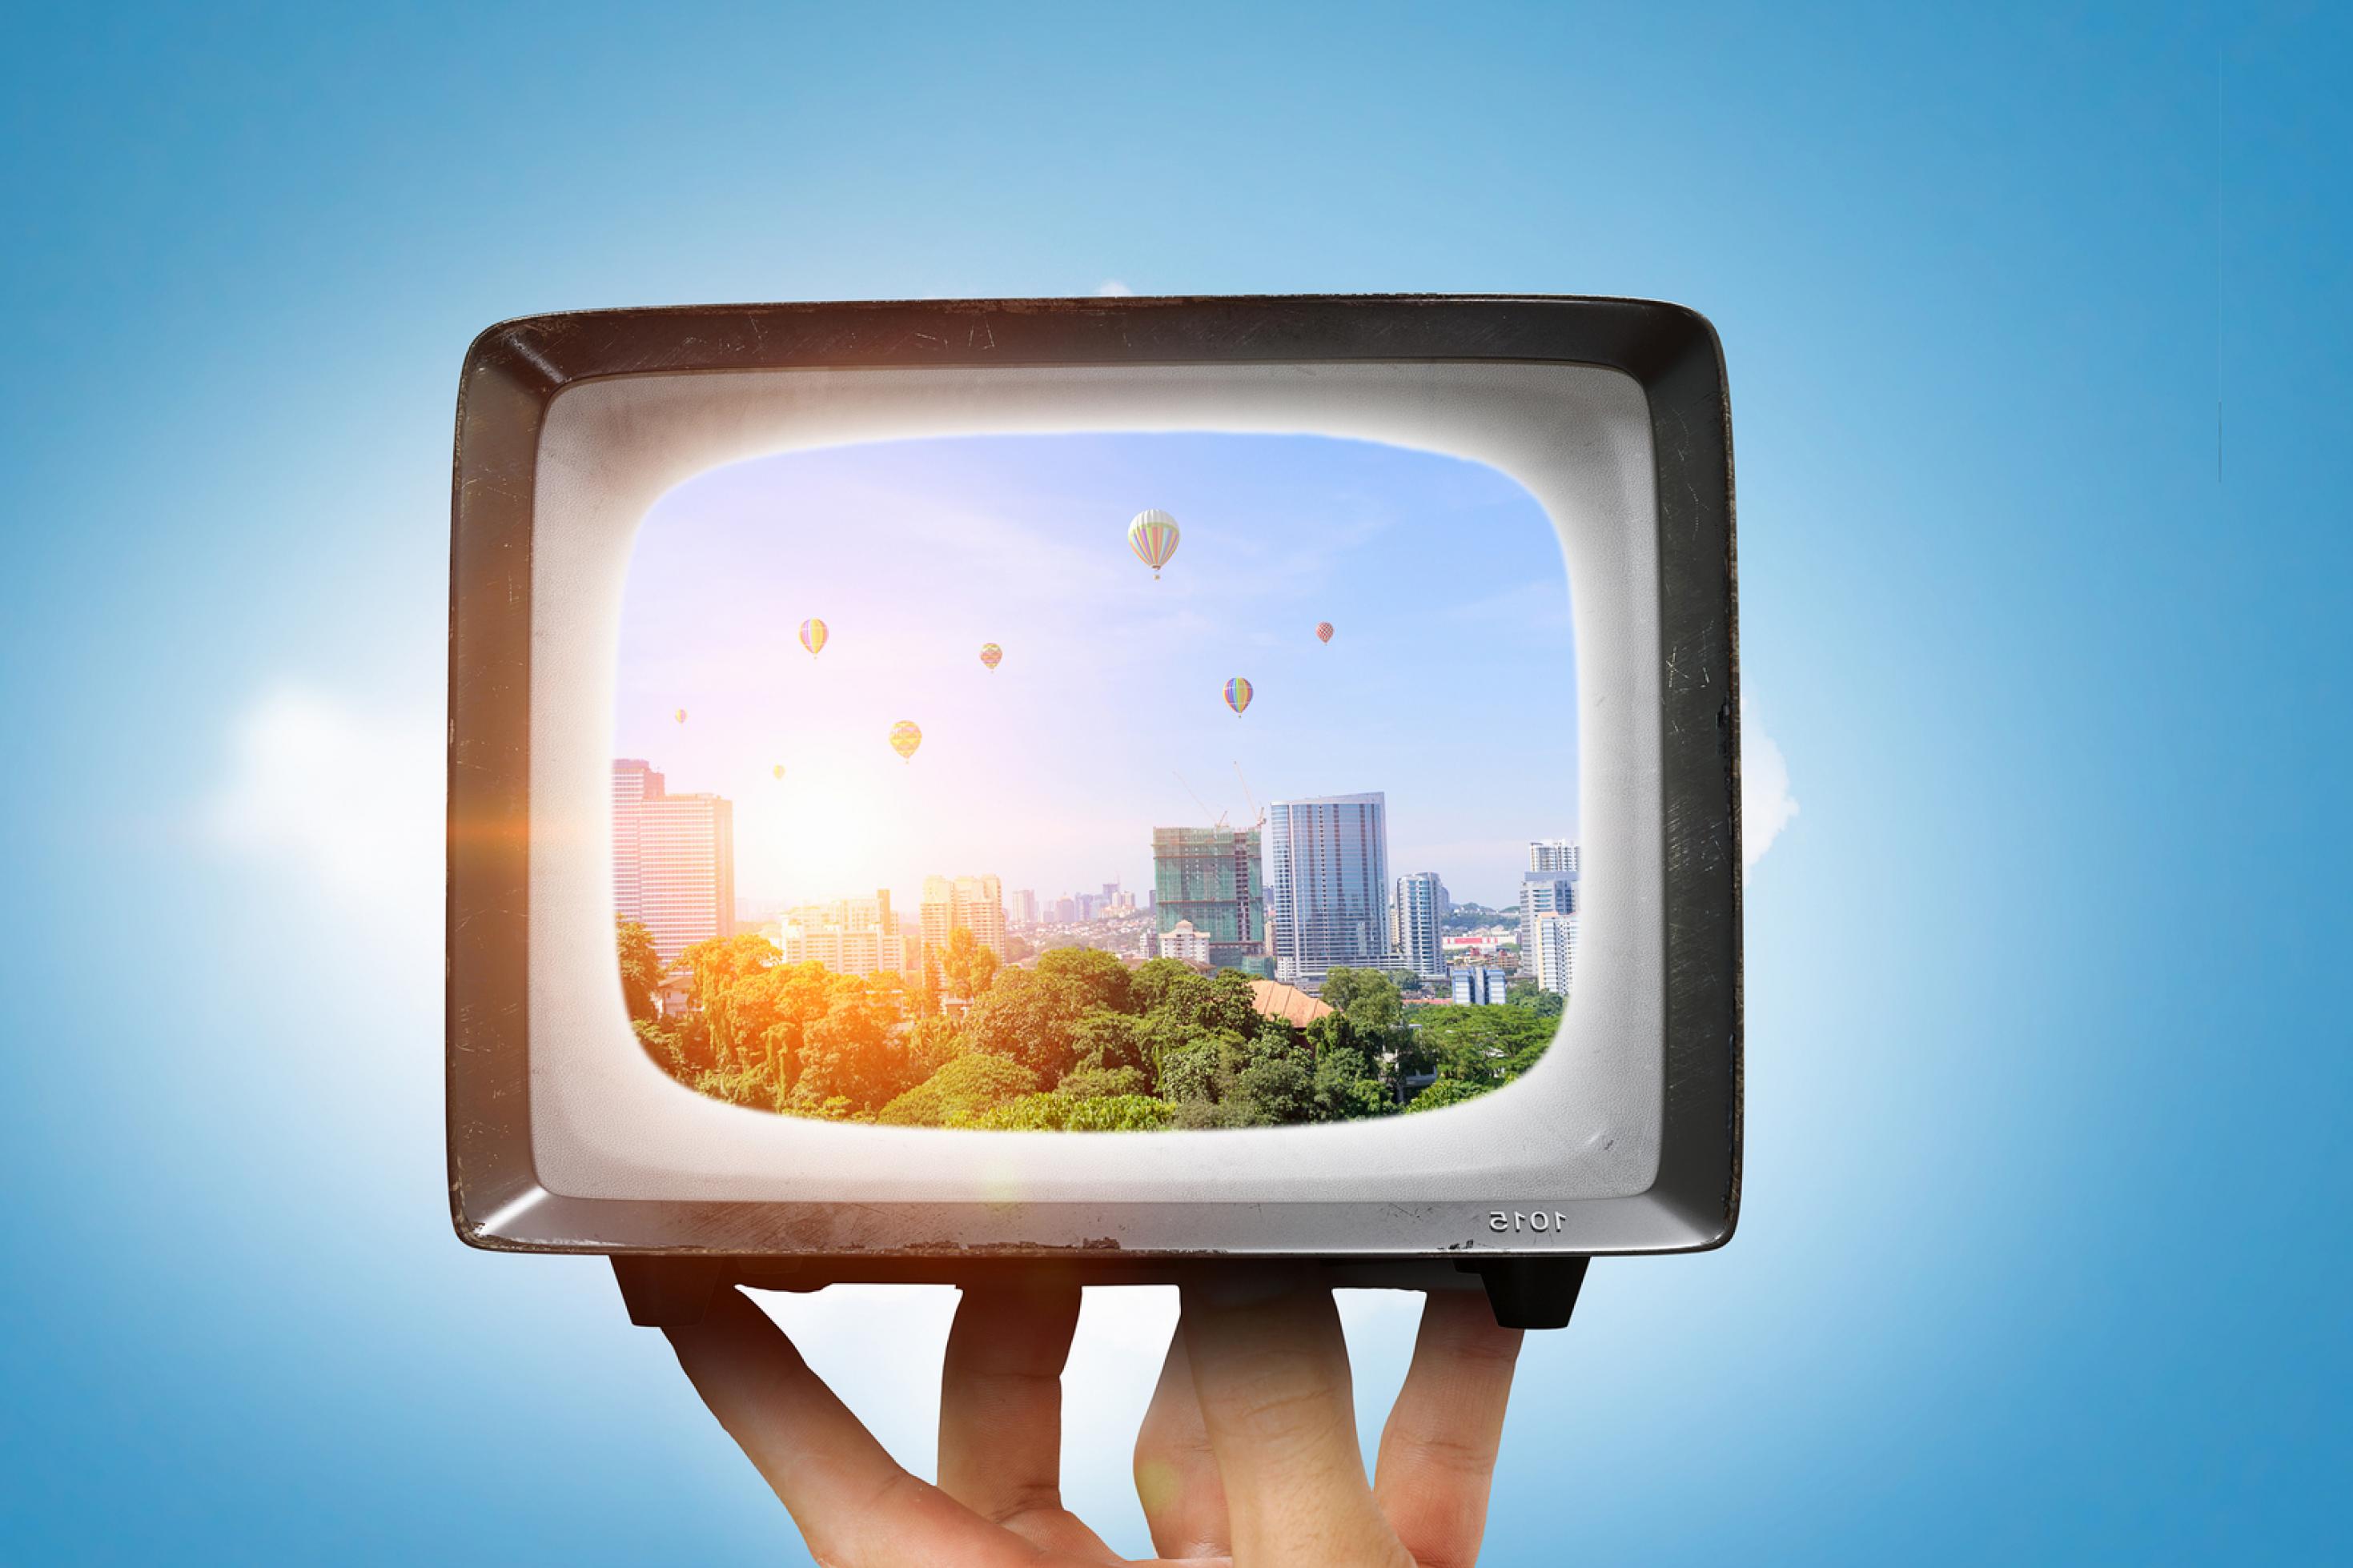 Symboldbild. Vor blauem Hintergrund hält eine Hand ein älteres Fernsehmodell in die Höhe. Darin zu sehen: eine grüne Stadt mit bunten Heißluftballons.